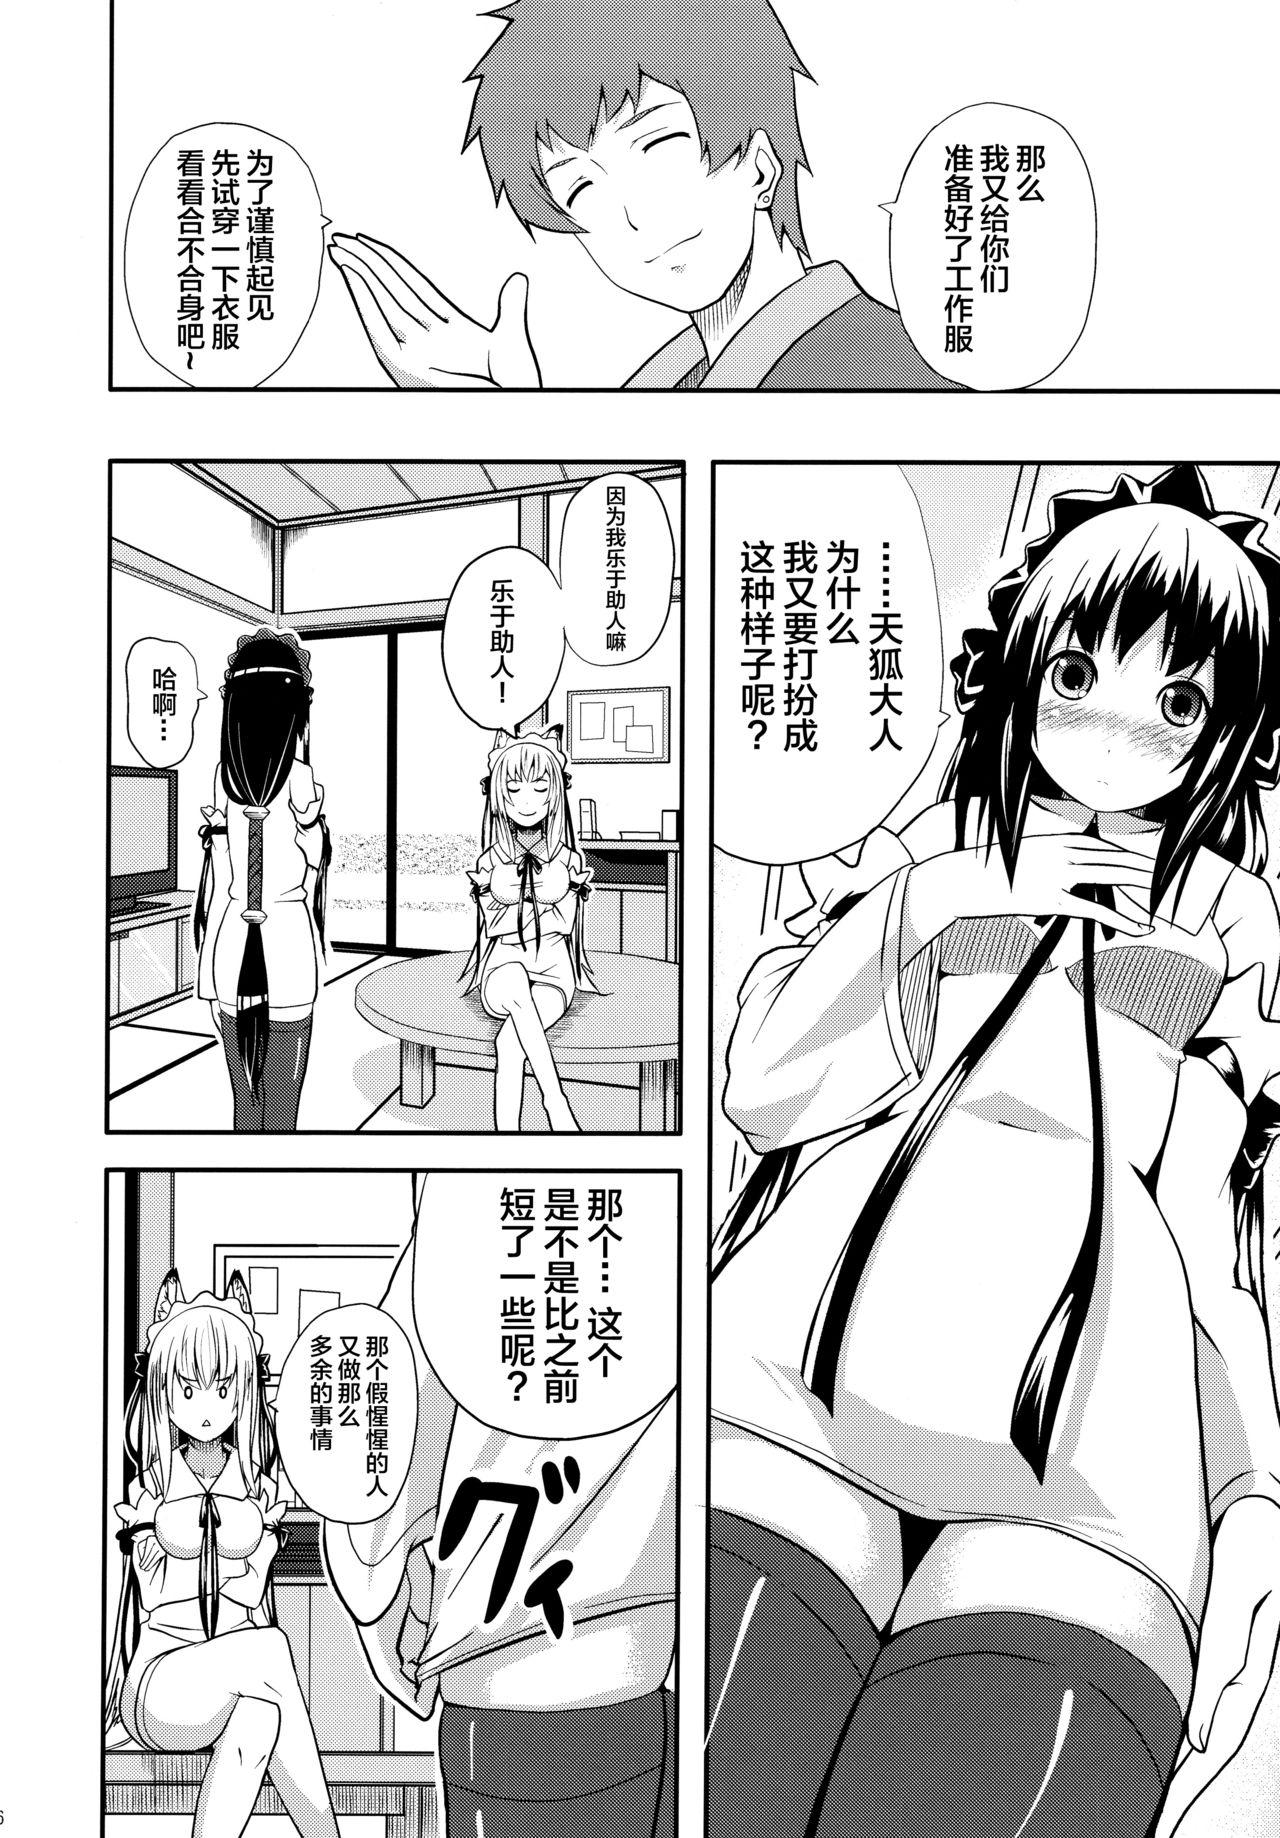 Jacking Off Hare, Tokidoki Oinari-sama 4 - Wagaya no oinari sama Free Fuck - Page 6